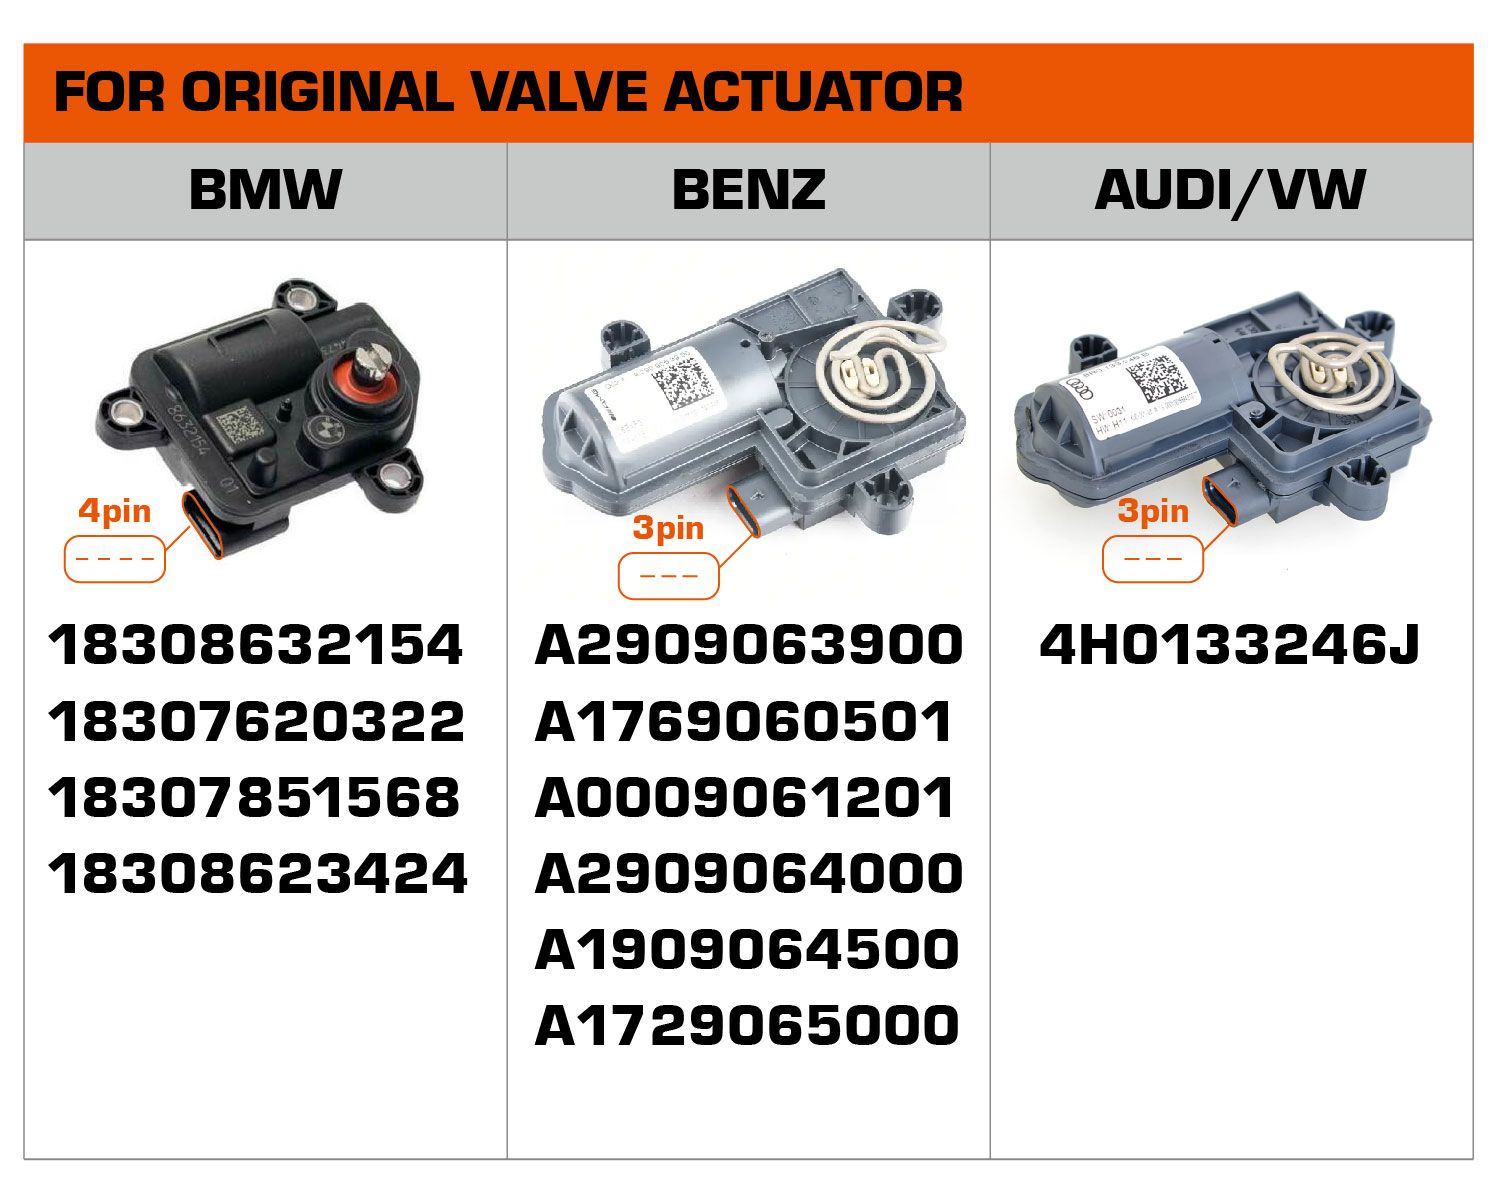 Os números das peças para a válvula original podem ser usados no escapamento modificado